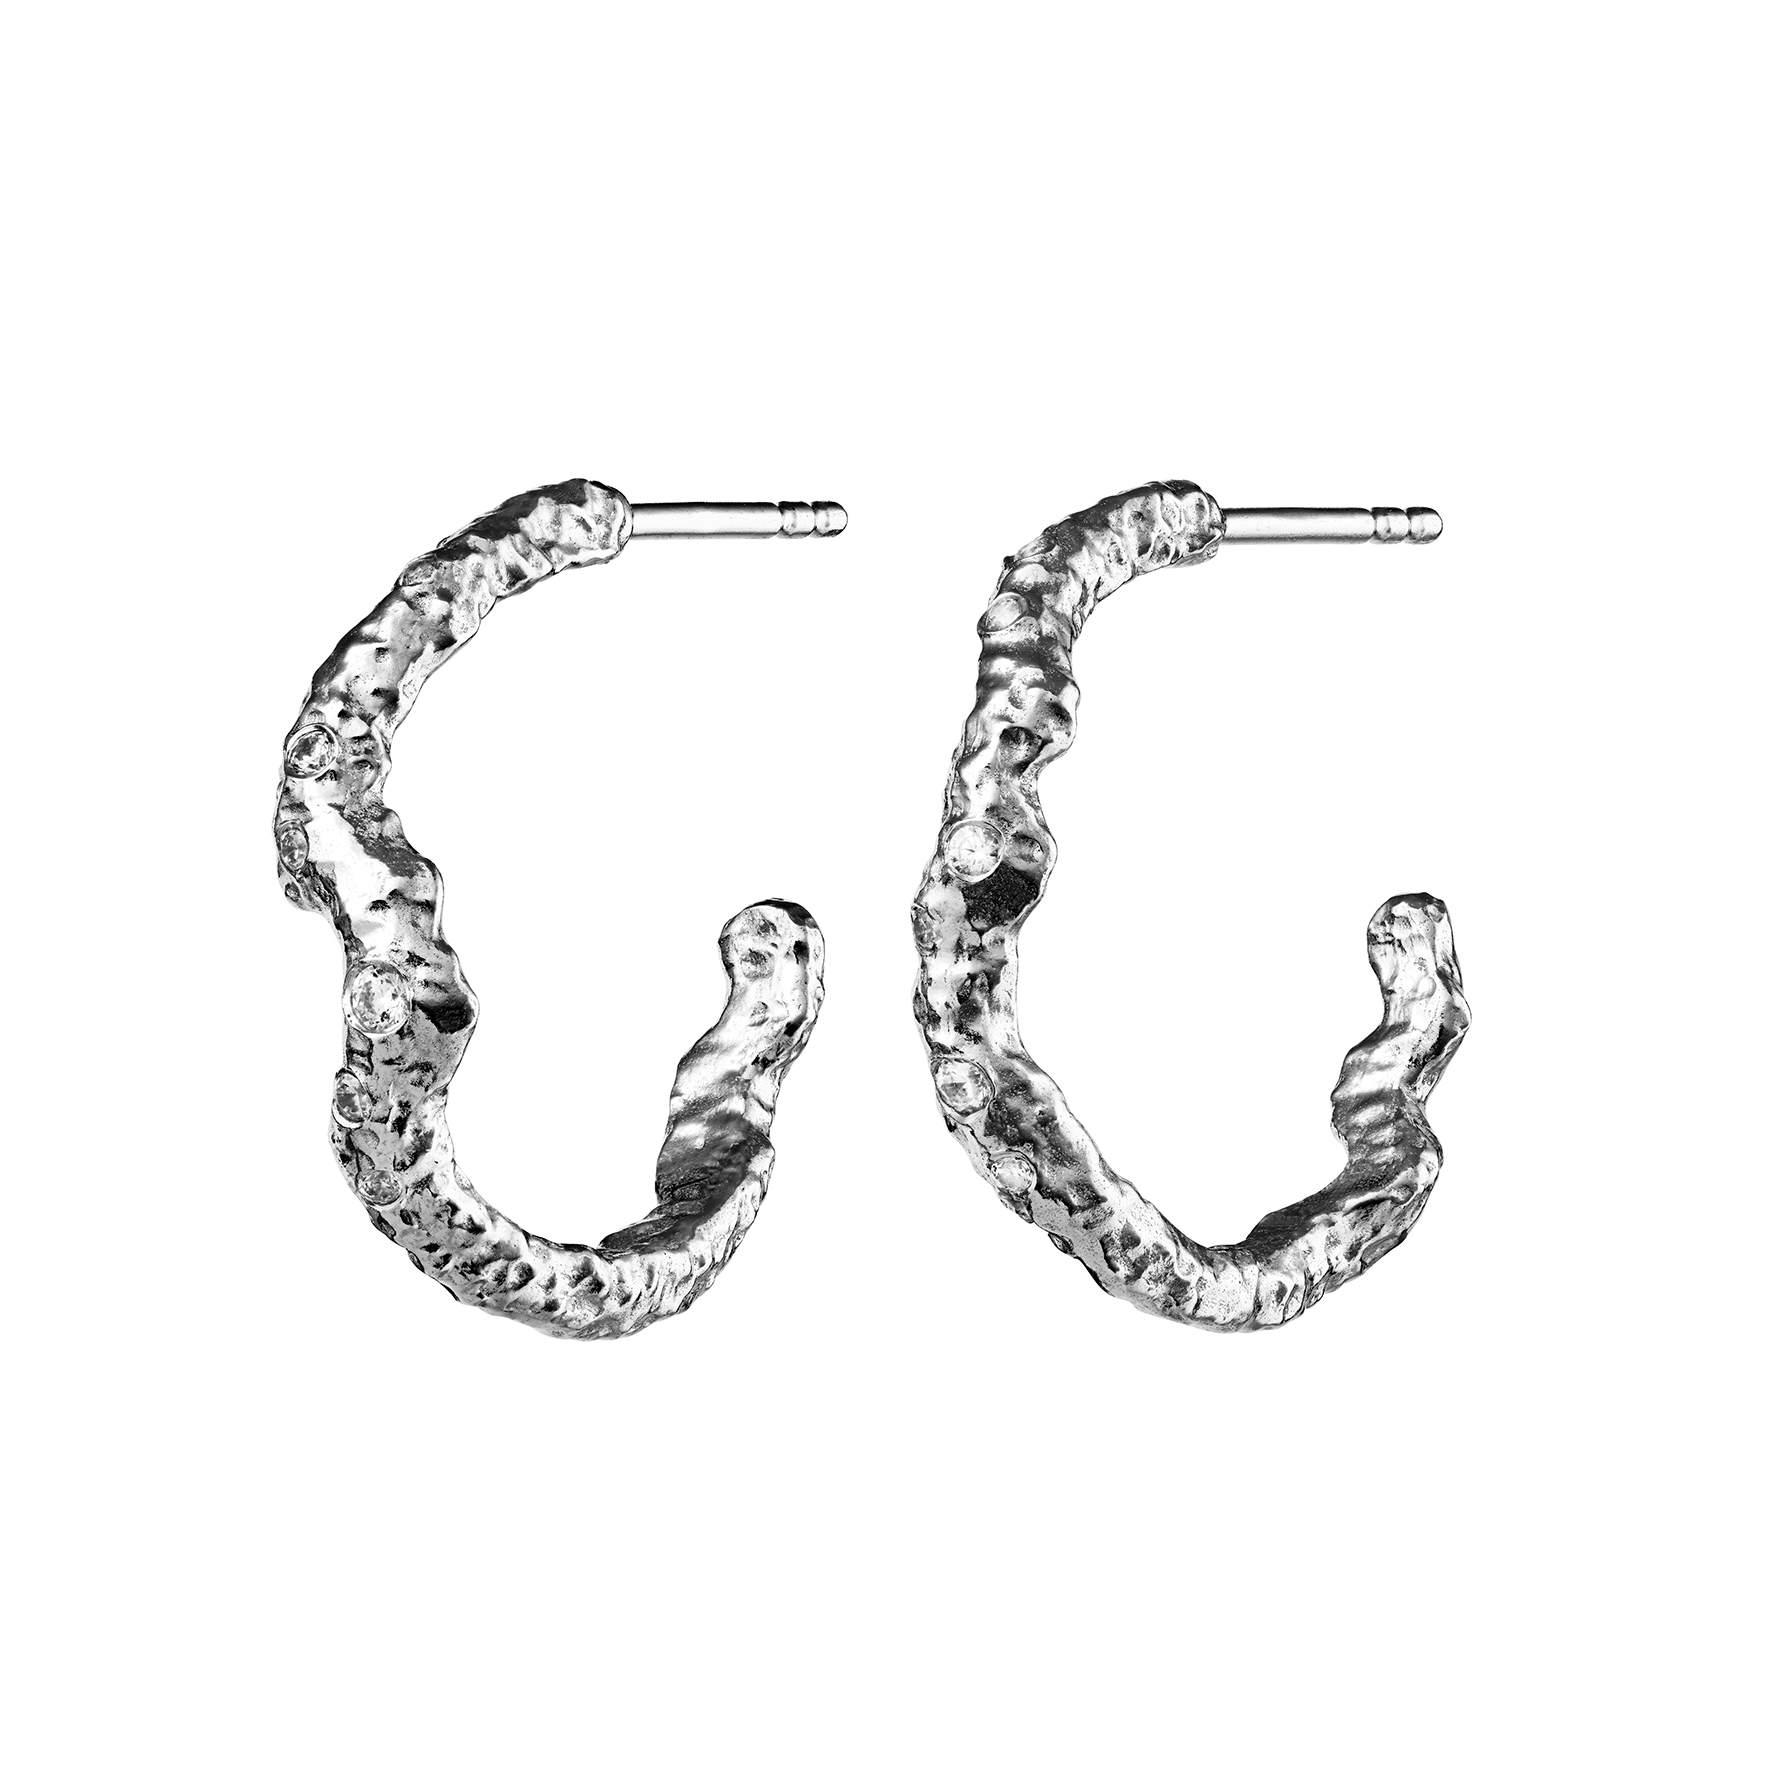 Janine Grande Earrings from Maanesten in Silver Sterling 925